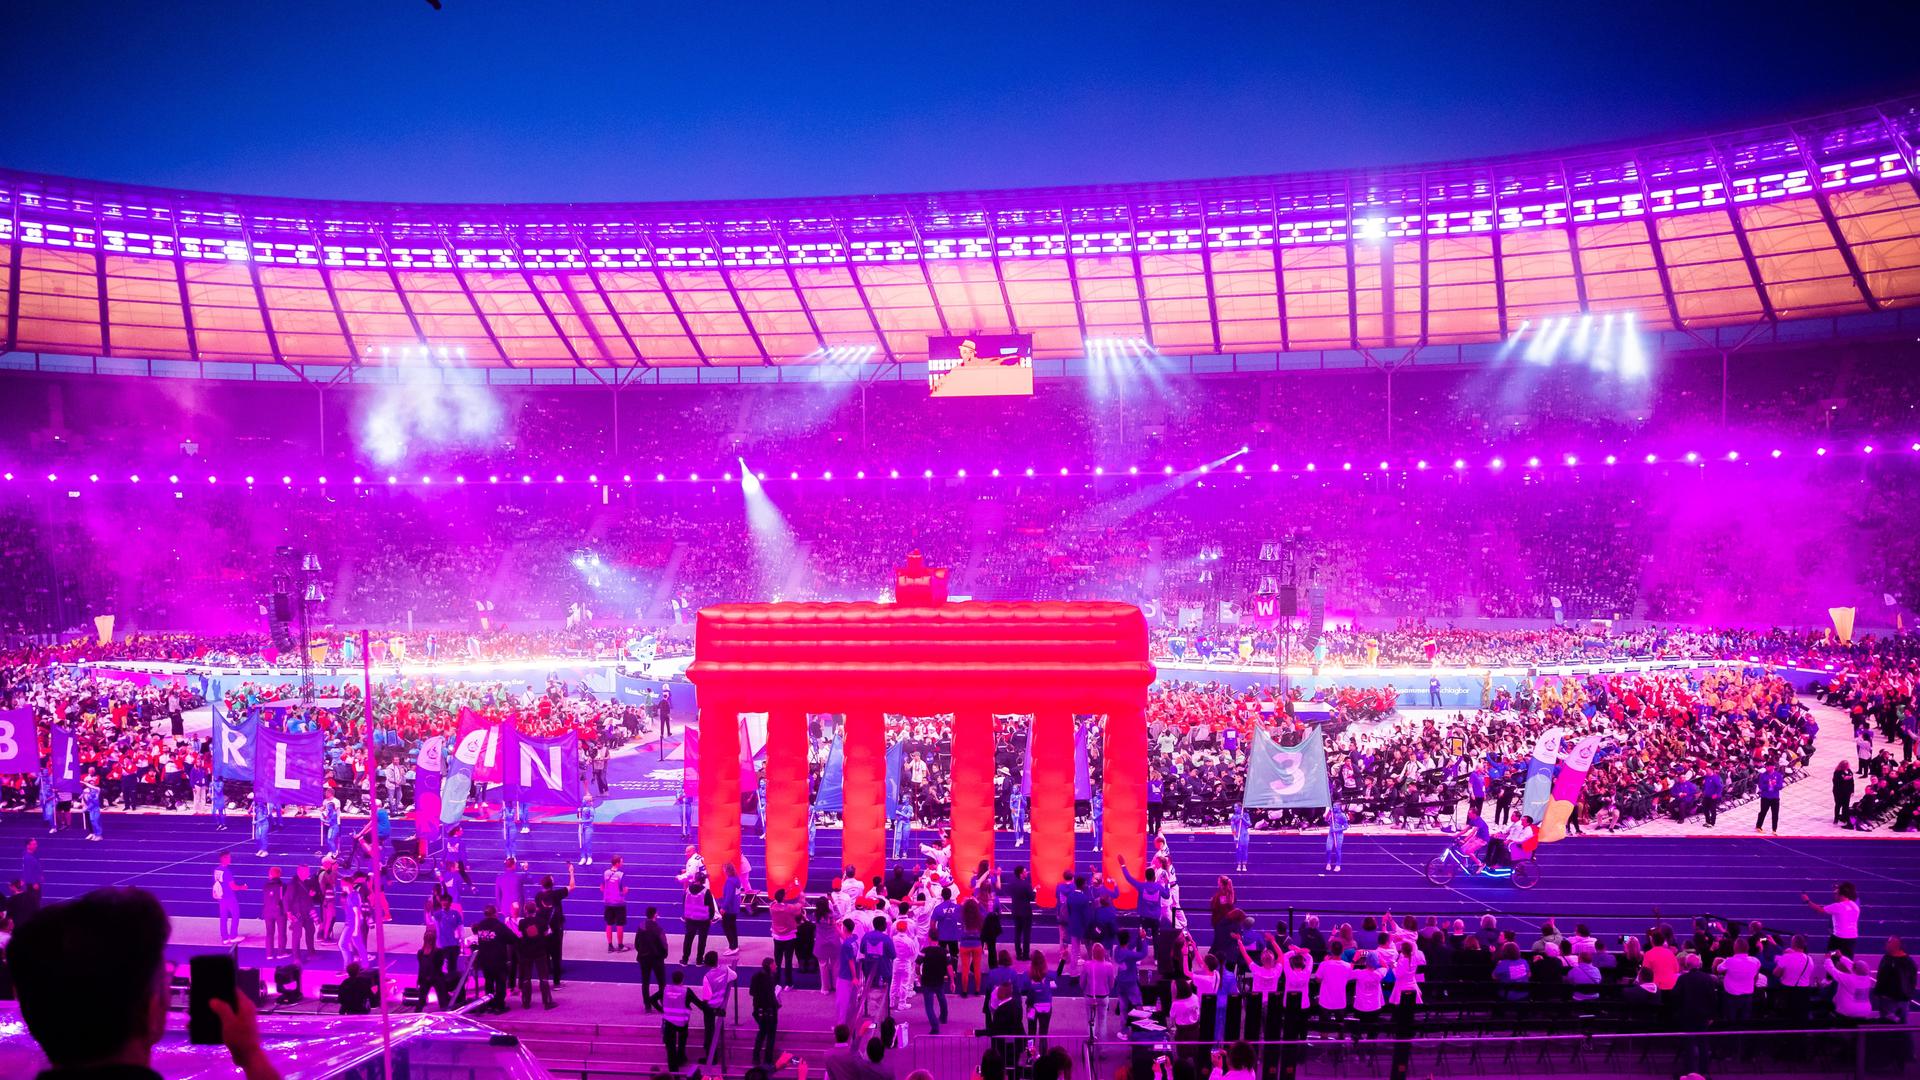 Athleten und Delegationsmitglieder nehmen an der Eröffnungsfeier der Special Olympics World Games Berlin 2023 im Olympiastadion teil. Das Bild ist ein Foto einer Nachtaufnahme des Stadions mit vielen Menschen. Das Brandenburger Tor ist in einer pinkfarbenen Projektion in der Stadionmitte zu sehen.